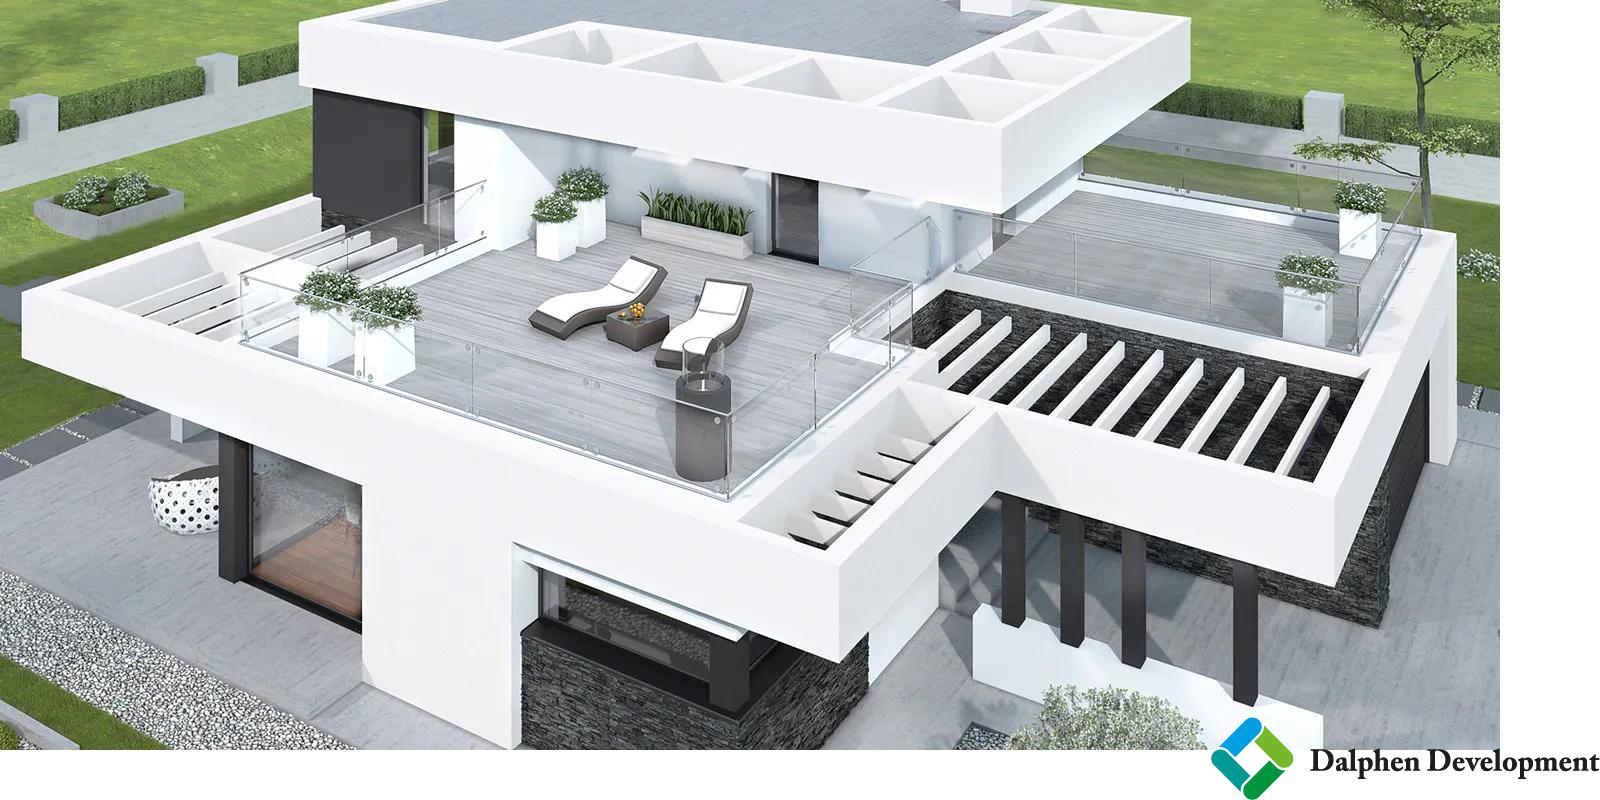 Exkluzivní prodej pozemku s výstavbou luxusní vily s garáží 6+kk 219 m2 Klimkovice - Hýlov 10540 m2, obrázek č. 2